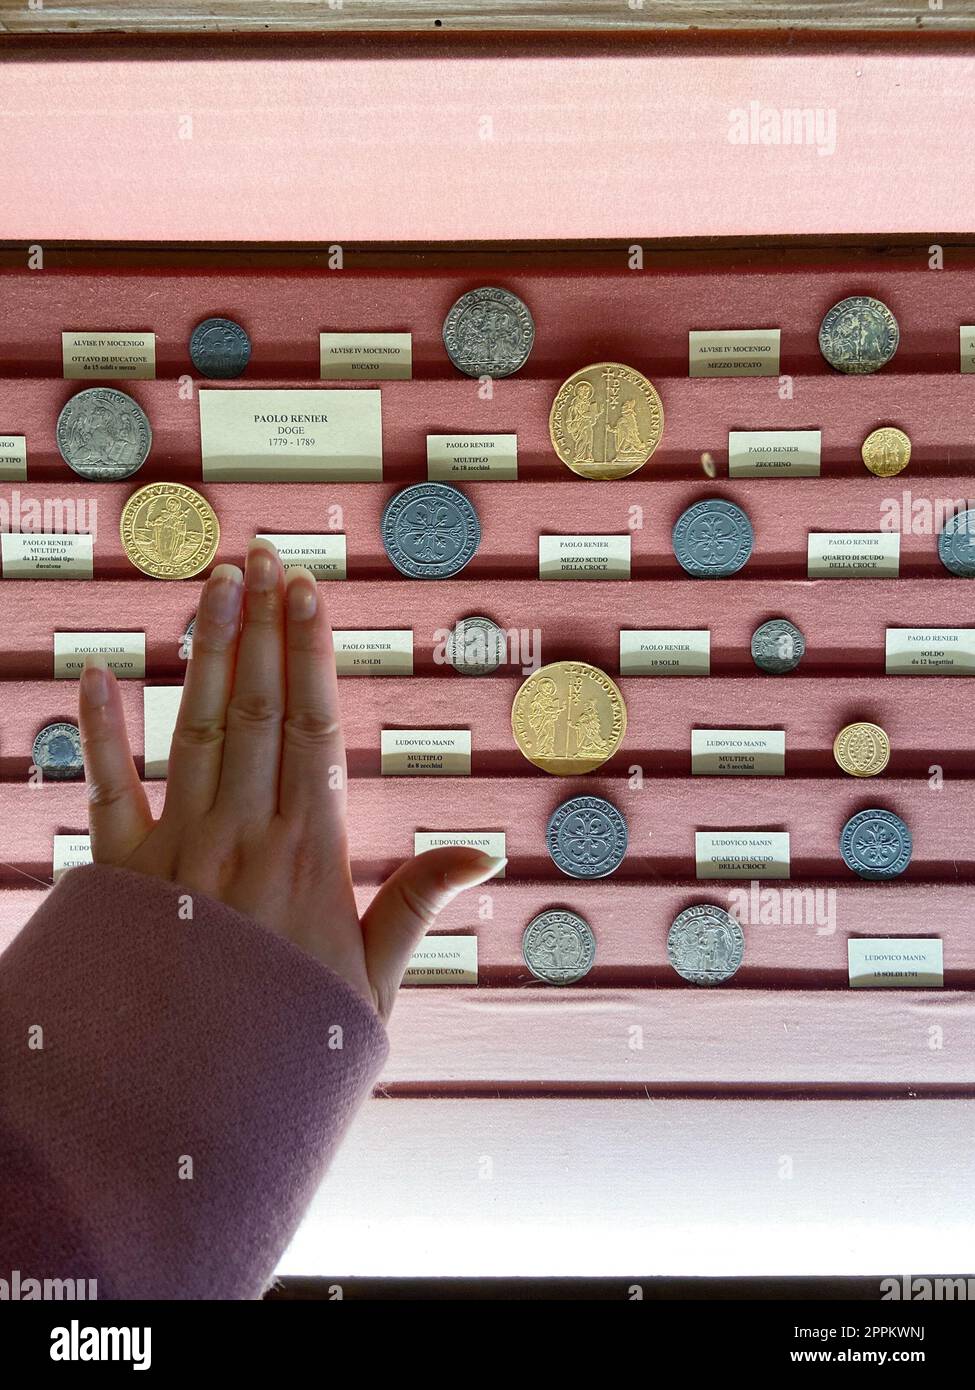 Die Hand greift nach einem Schaukasten mit mittelalterlichen Münzen Stockfoto